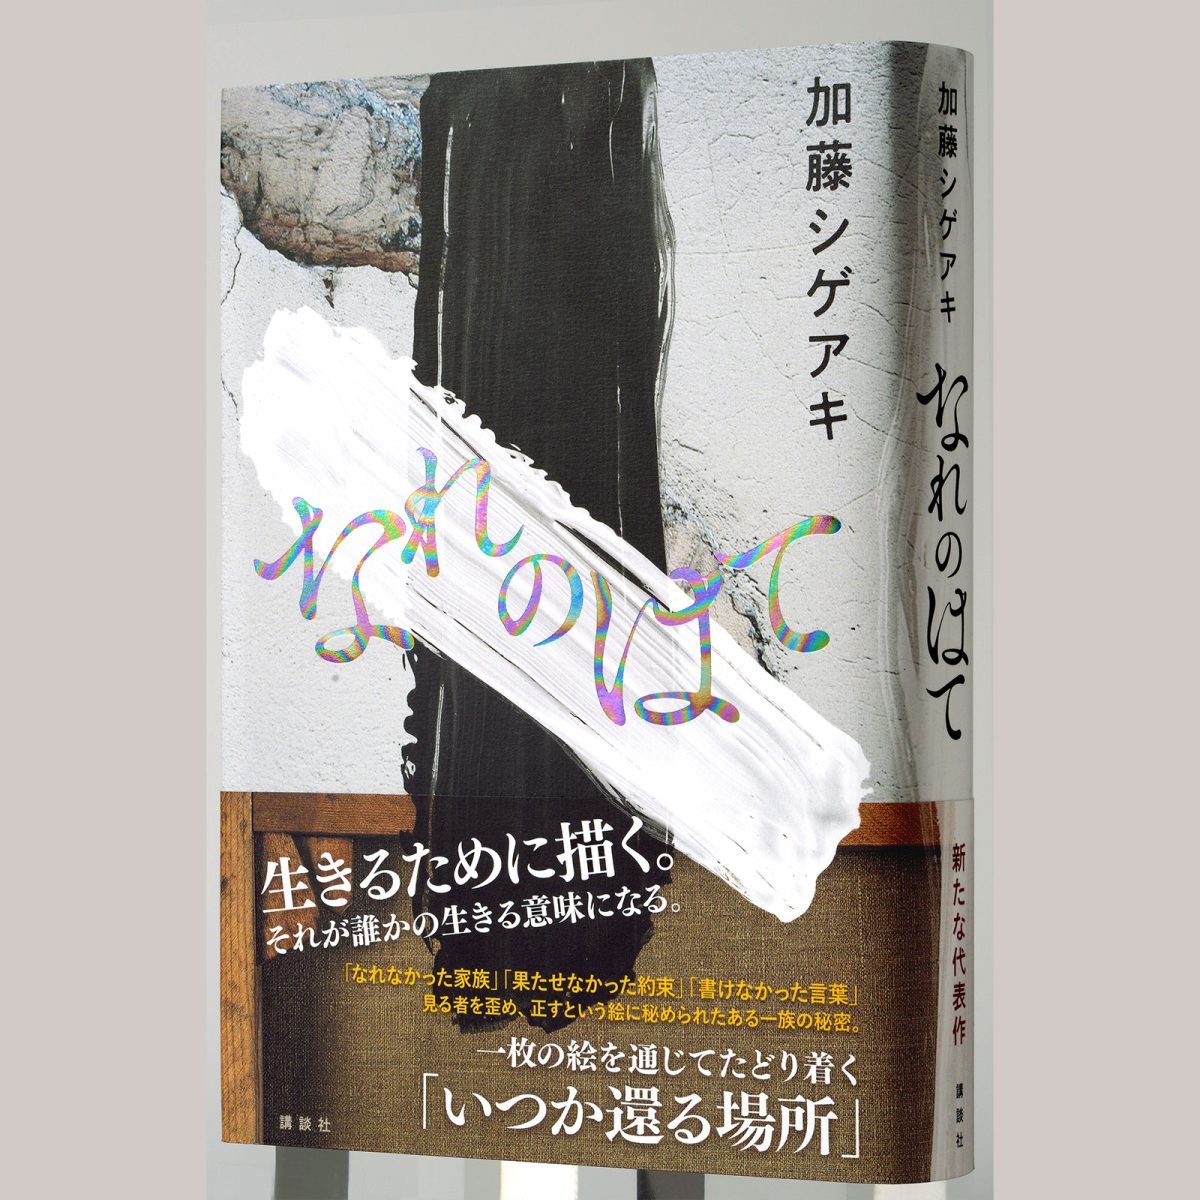 加藤シゲアキの長編小説『なれのはて』